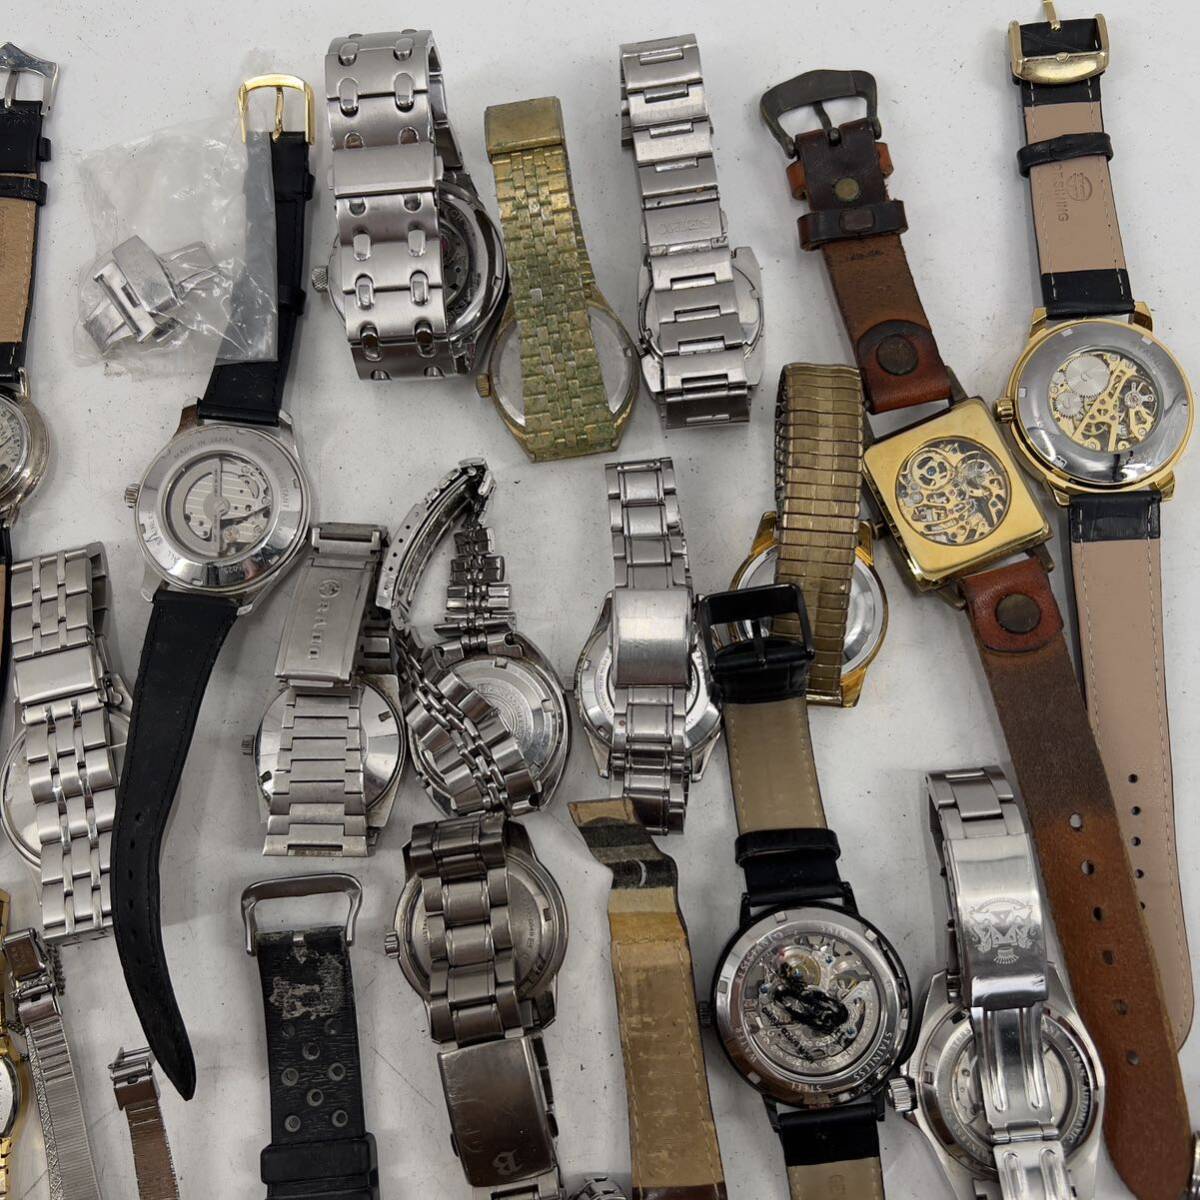  продажа комплектом самозаводящиеся часы механический завод кинетический AGS часы SEIKO CITIZEN ORIENT TECHNOS ORIENT античный бренд мода различный 50шт.